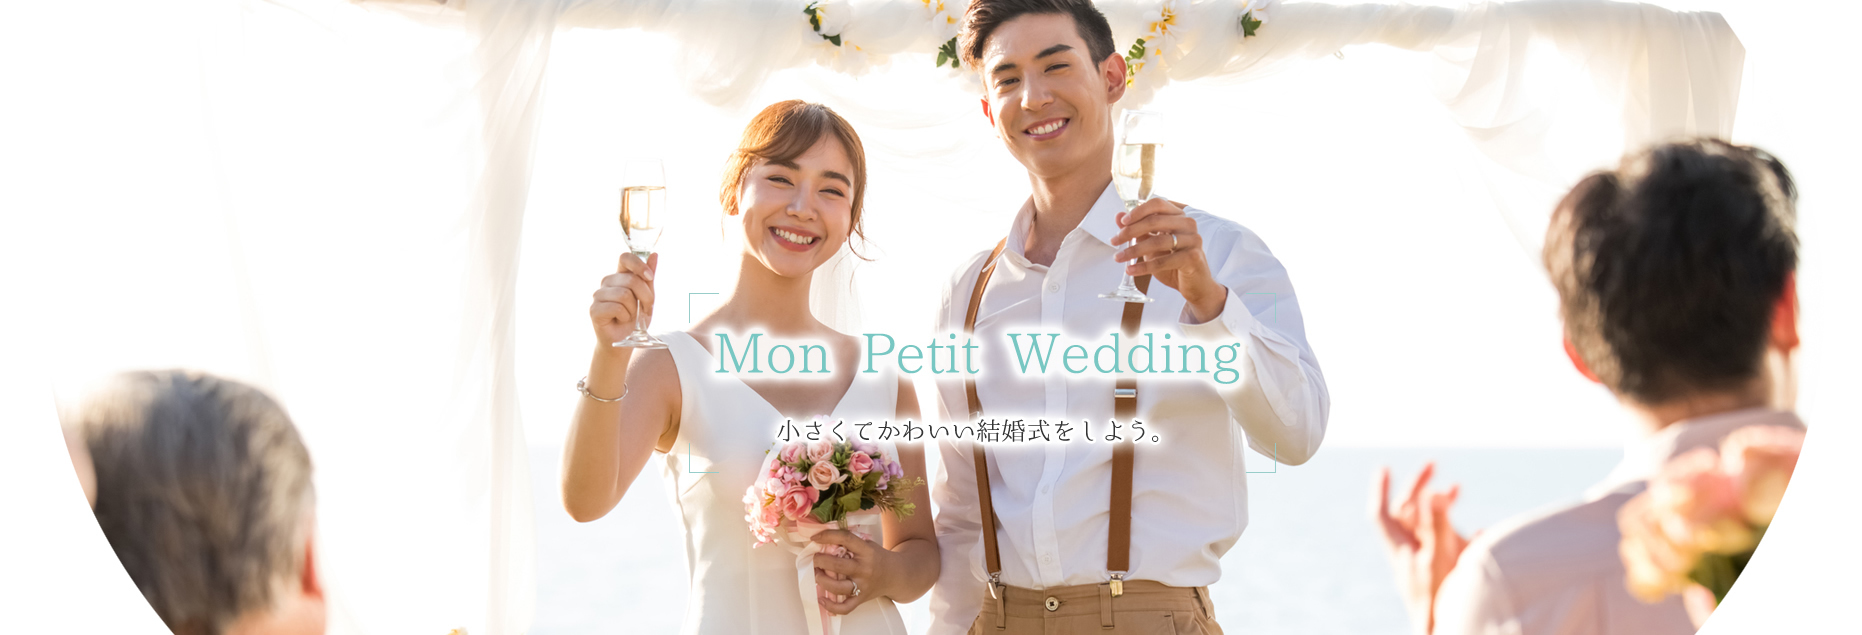 Mon Petit Wedding 小さくてかわいい結婚式をしよう。